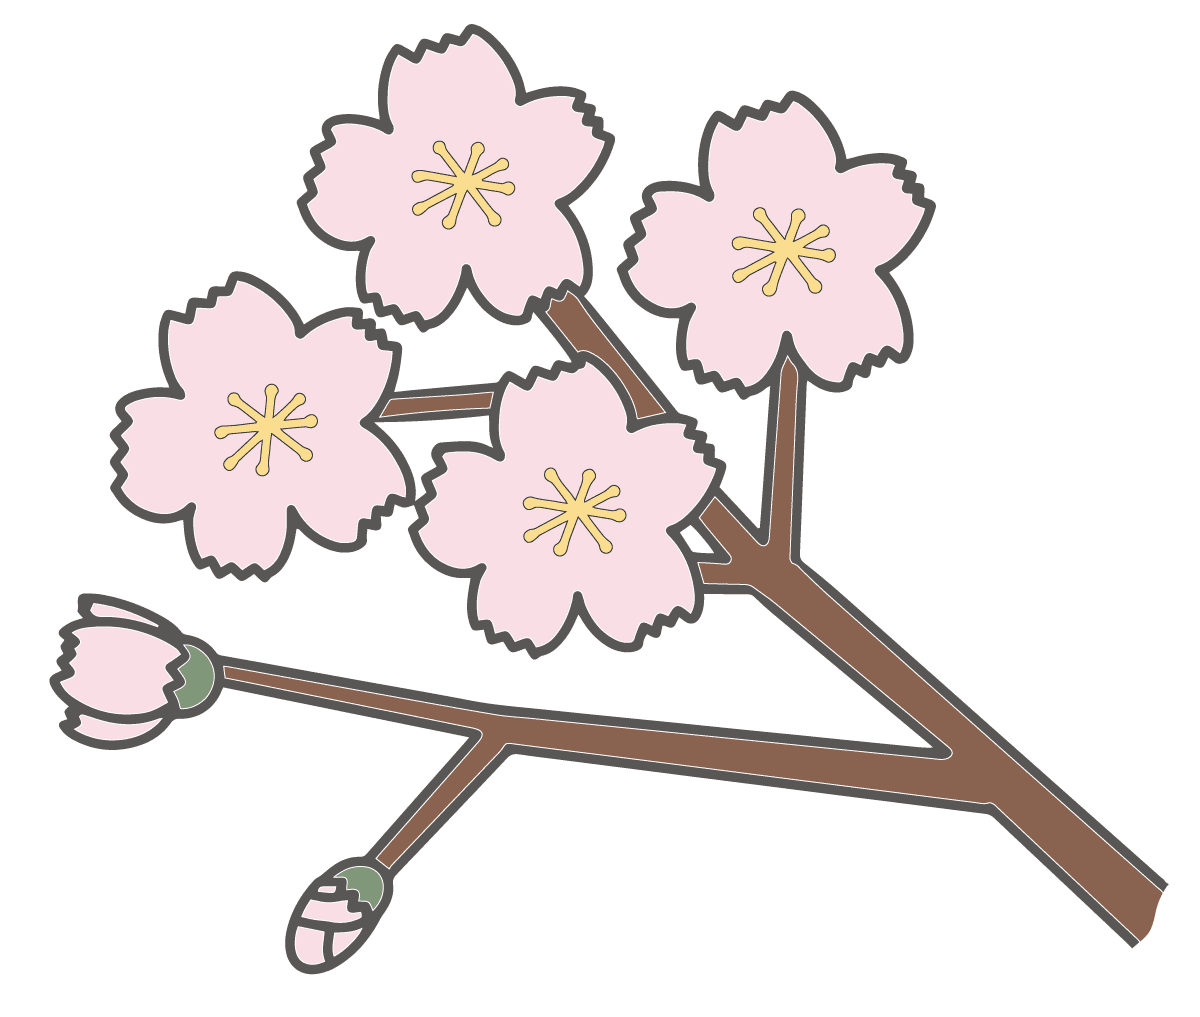 開いた桜の花とつぼみの無料イラスト 手書き風 かわいいフリー素材屋 いらすと係